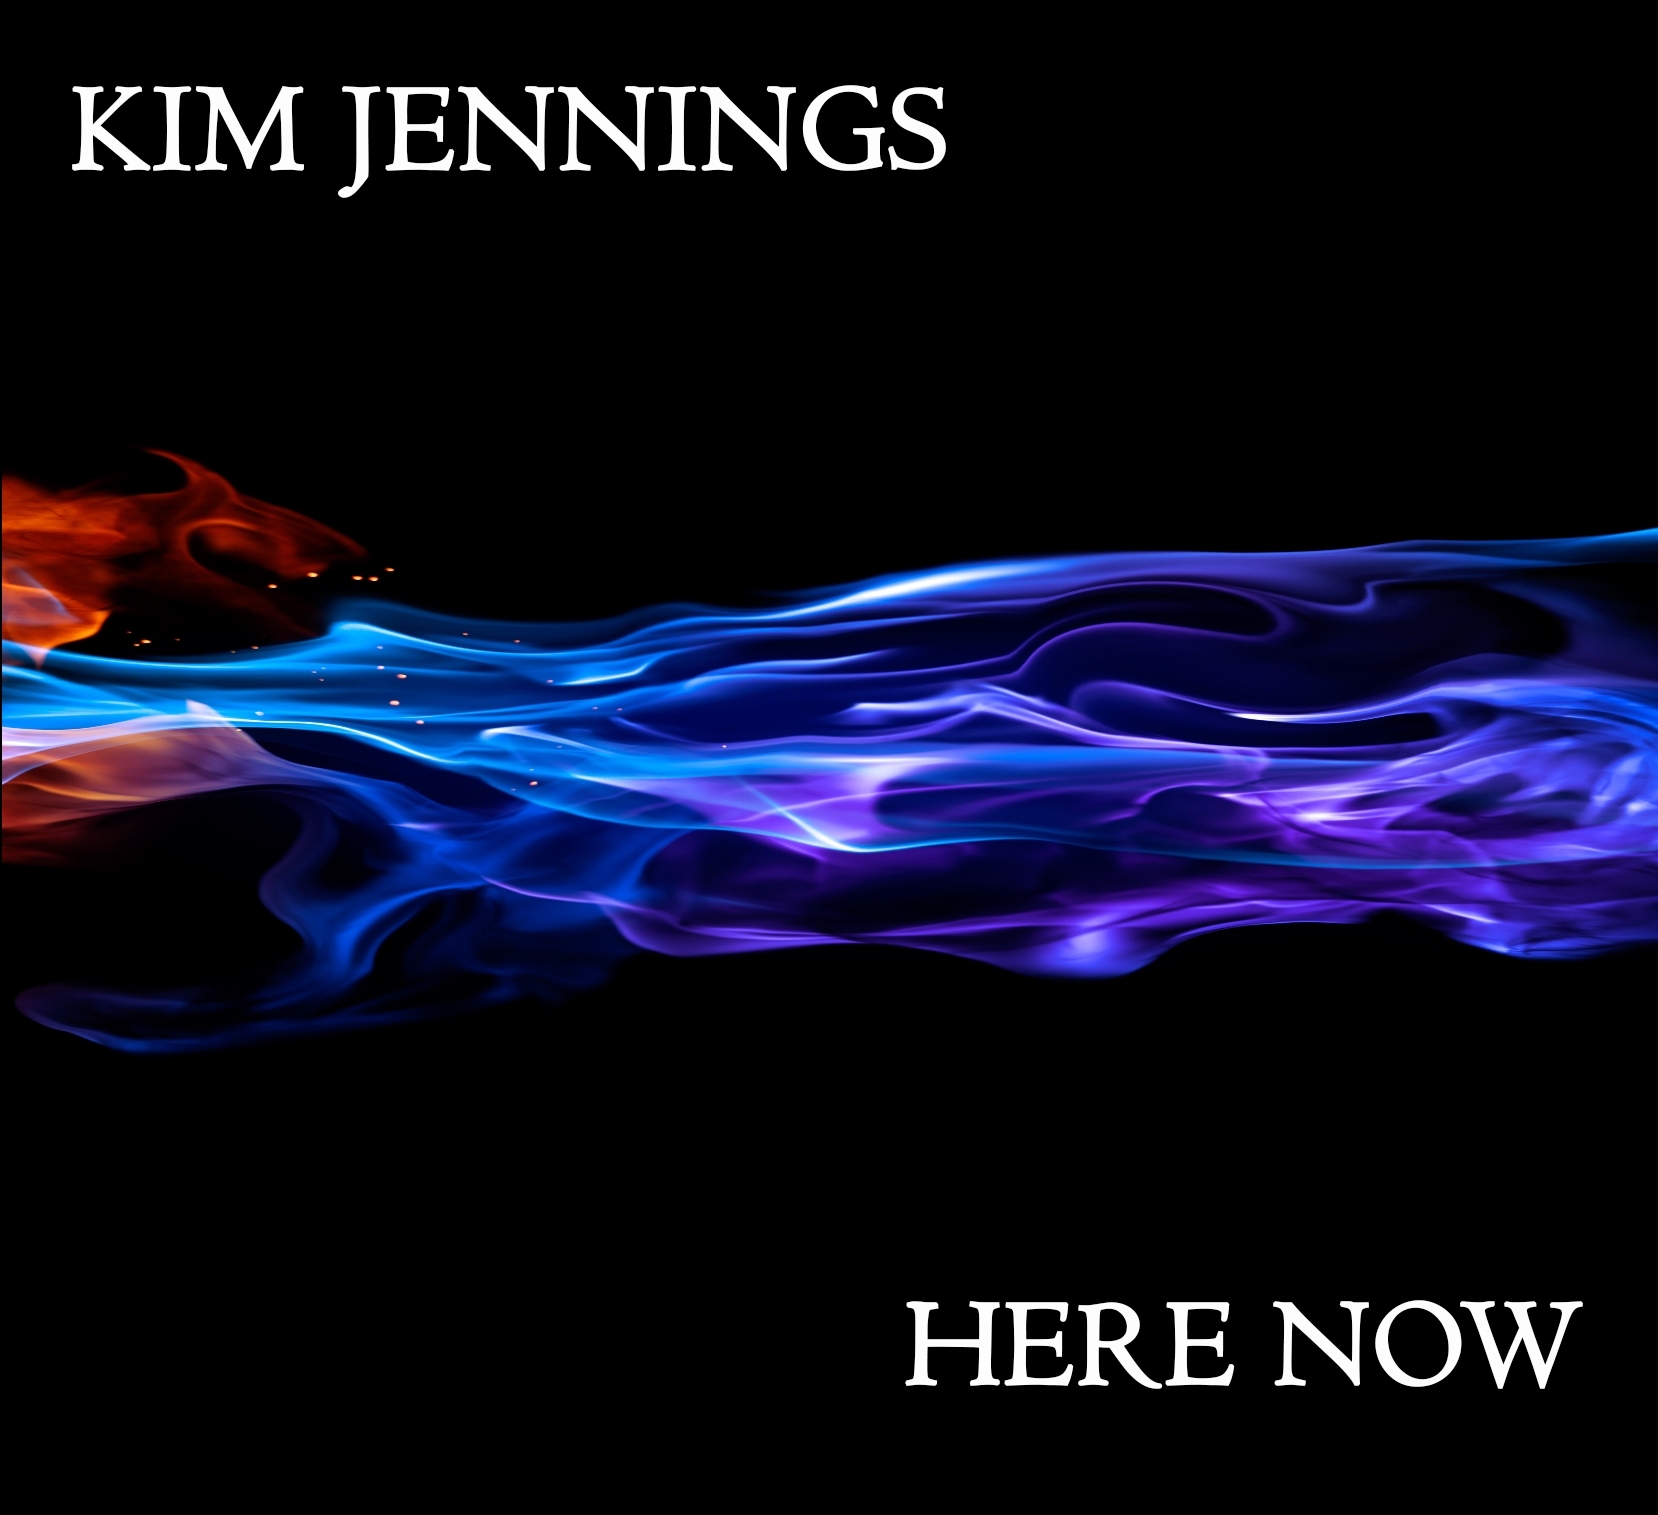 Kim Jennings Here Now CD Art 